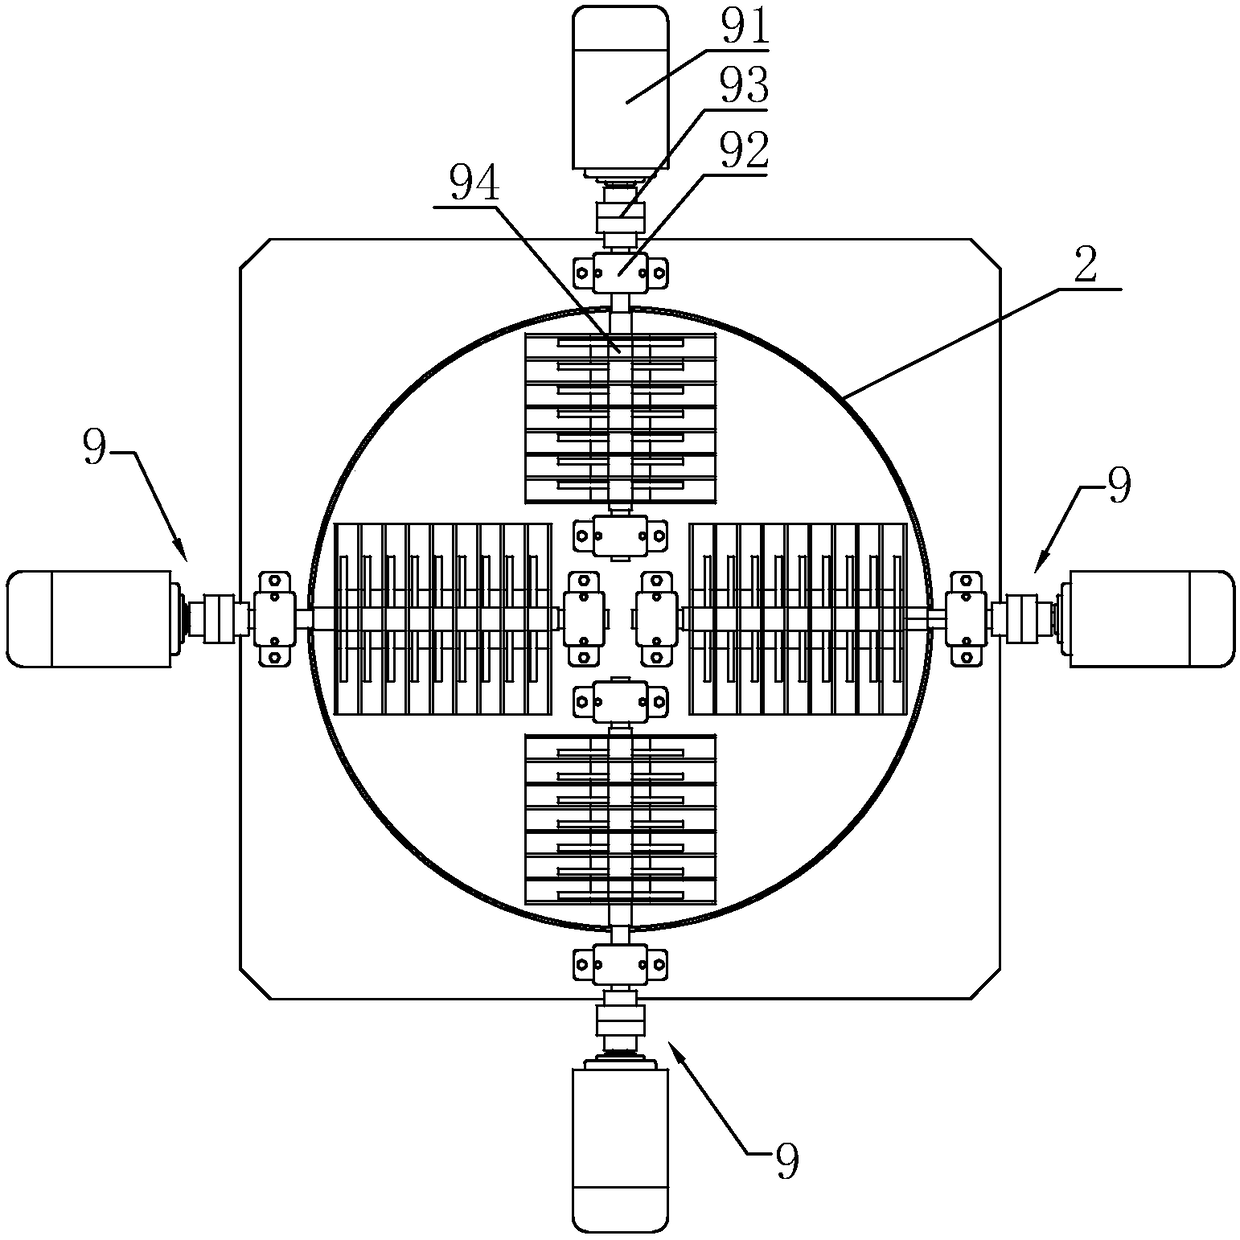 A multi-rotor straw grinder